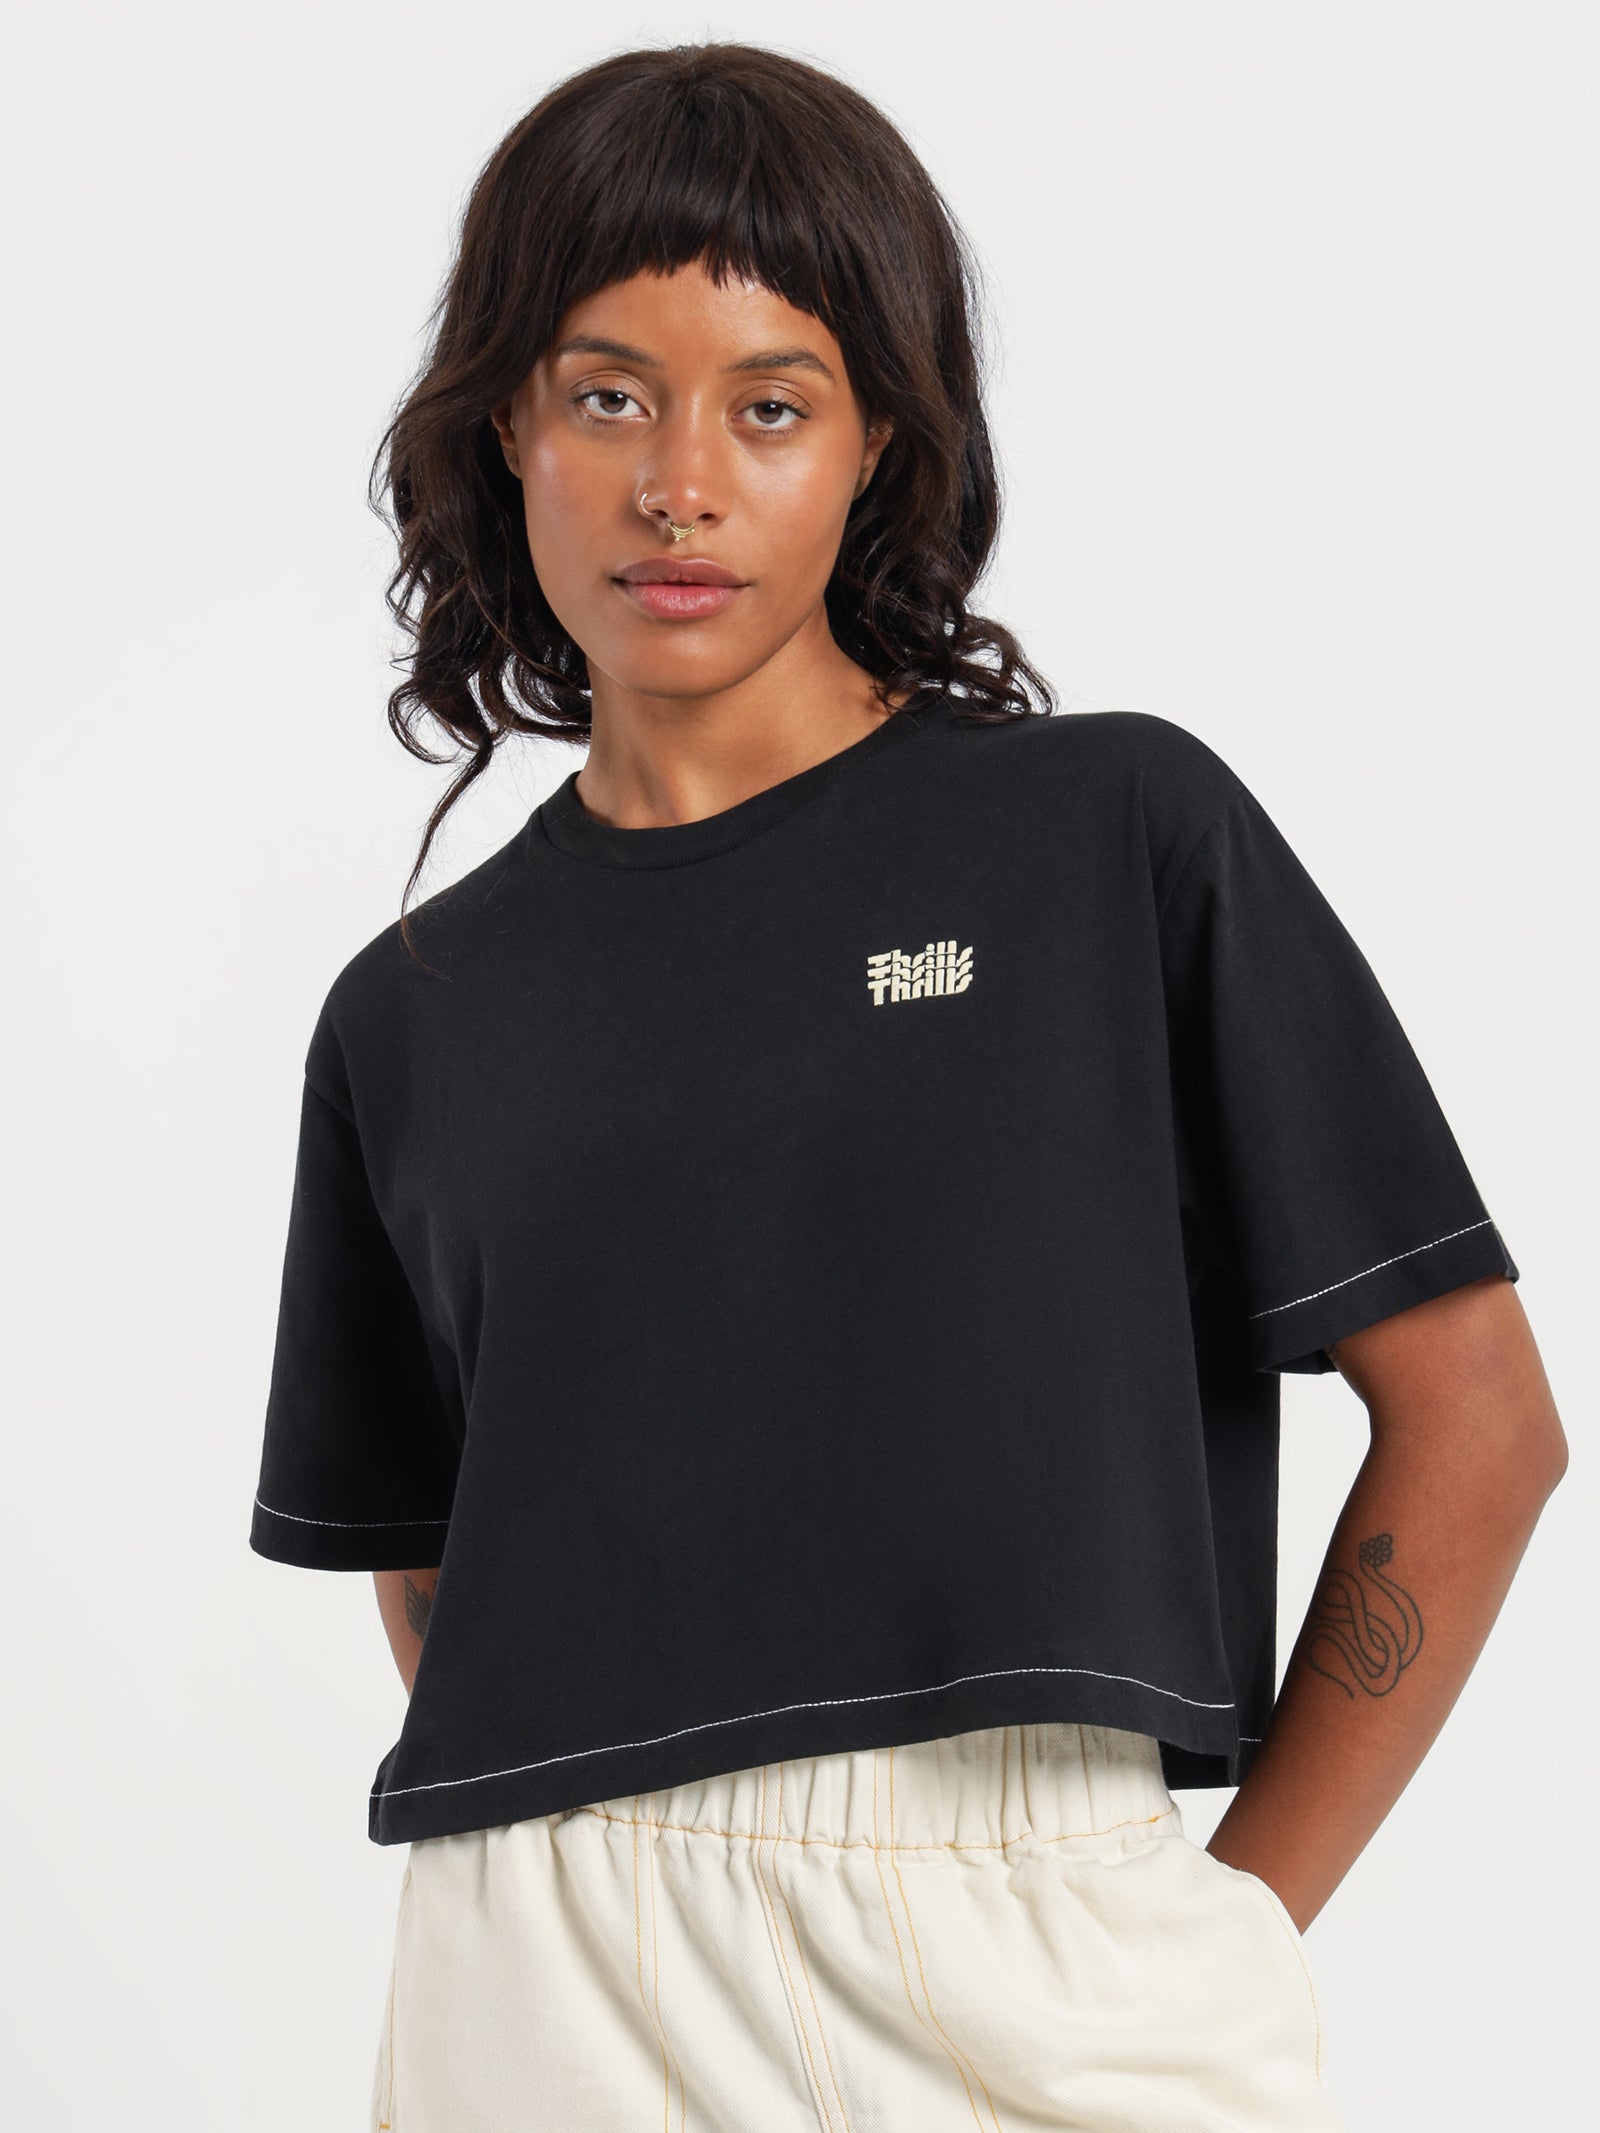 Infinite Thrills Merch Crop T-Shirt in Black - Glue Store